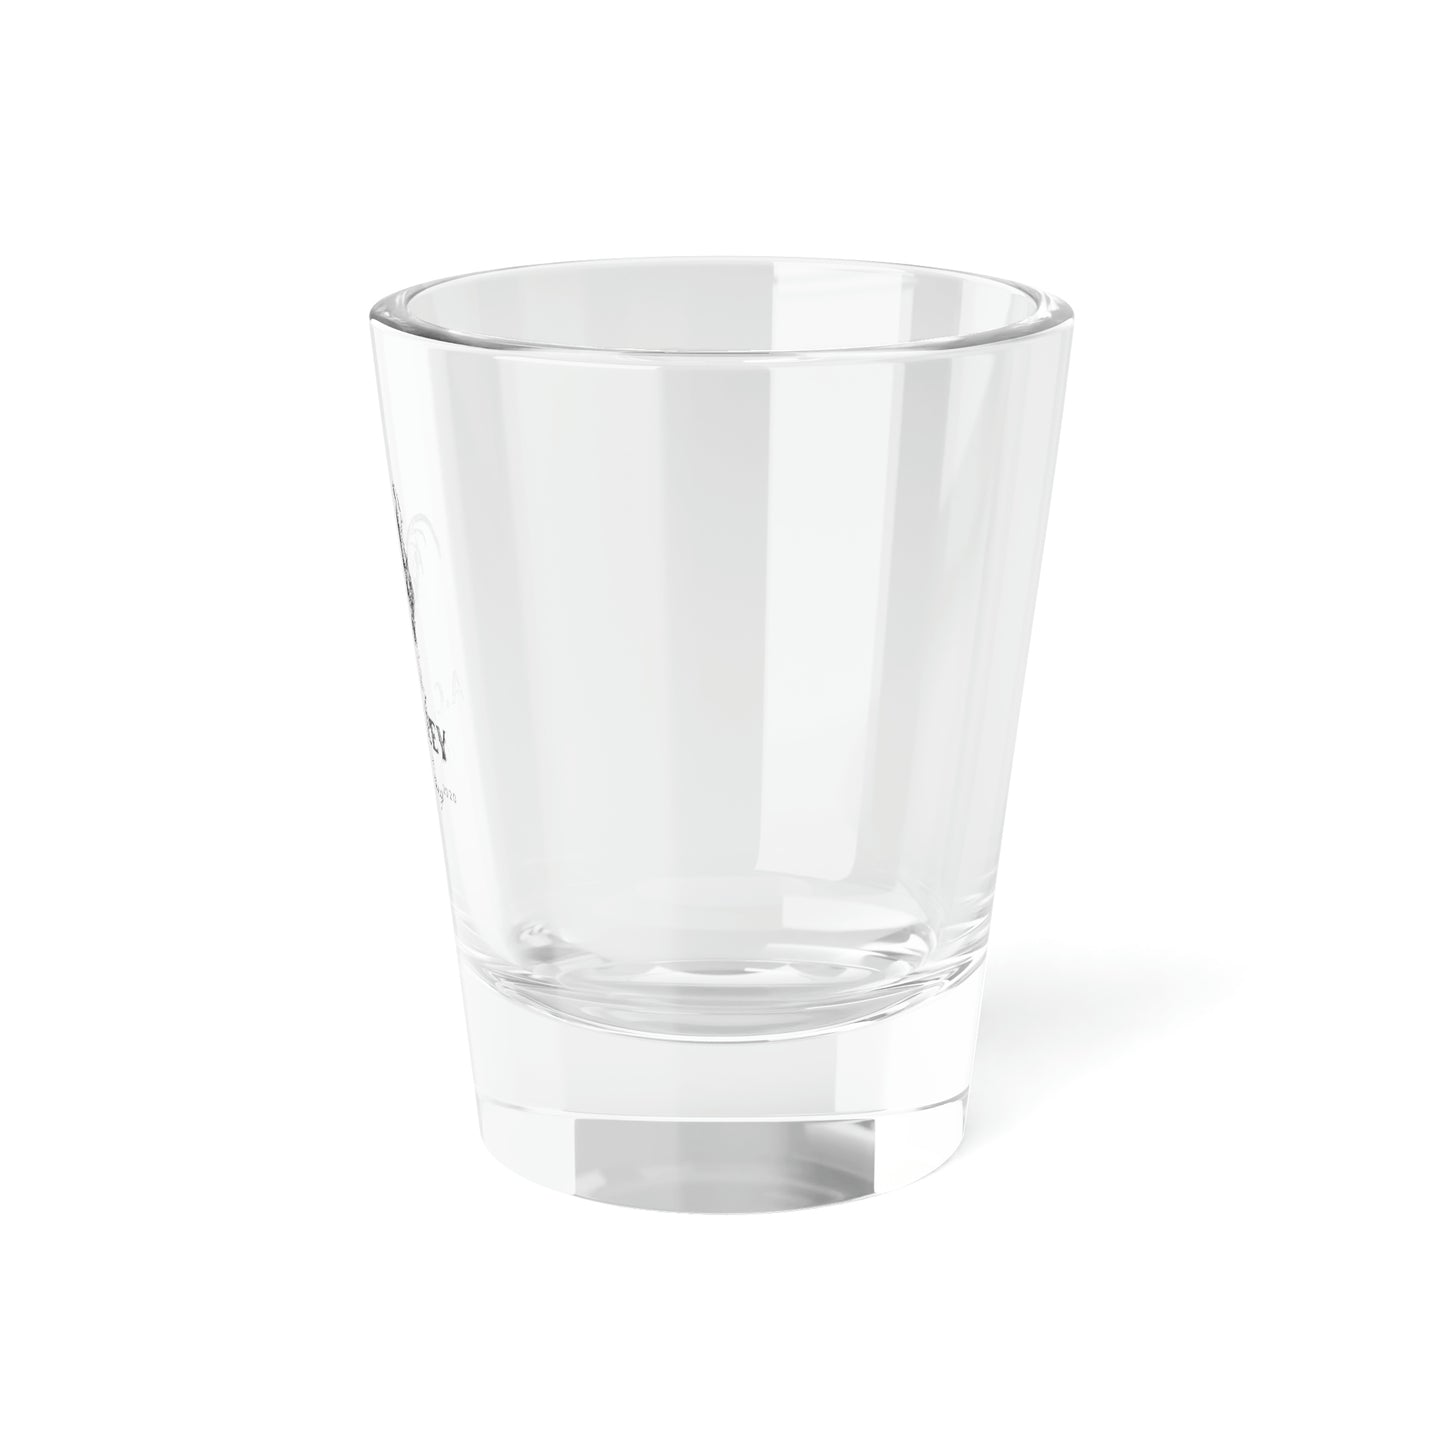 ACRWC Shot Glass, 1.5oz